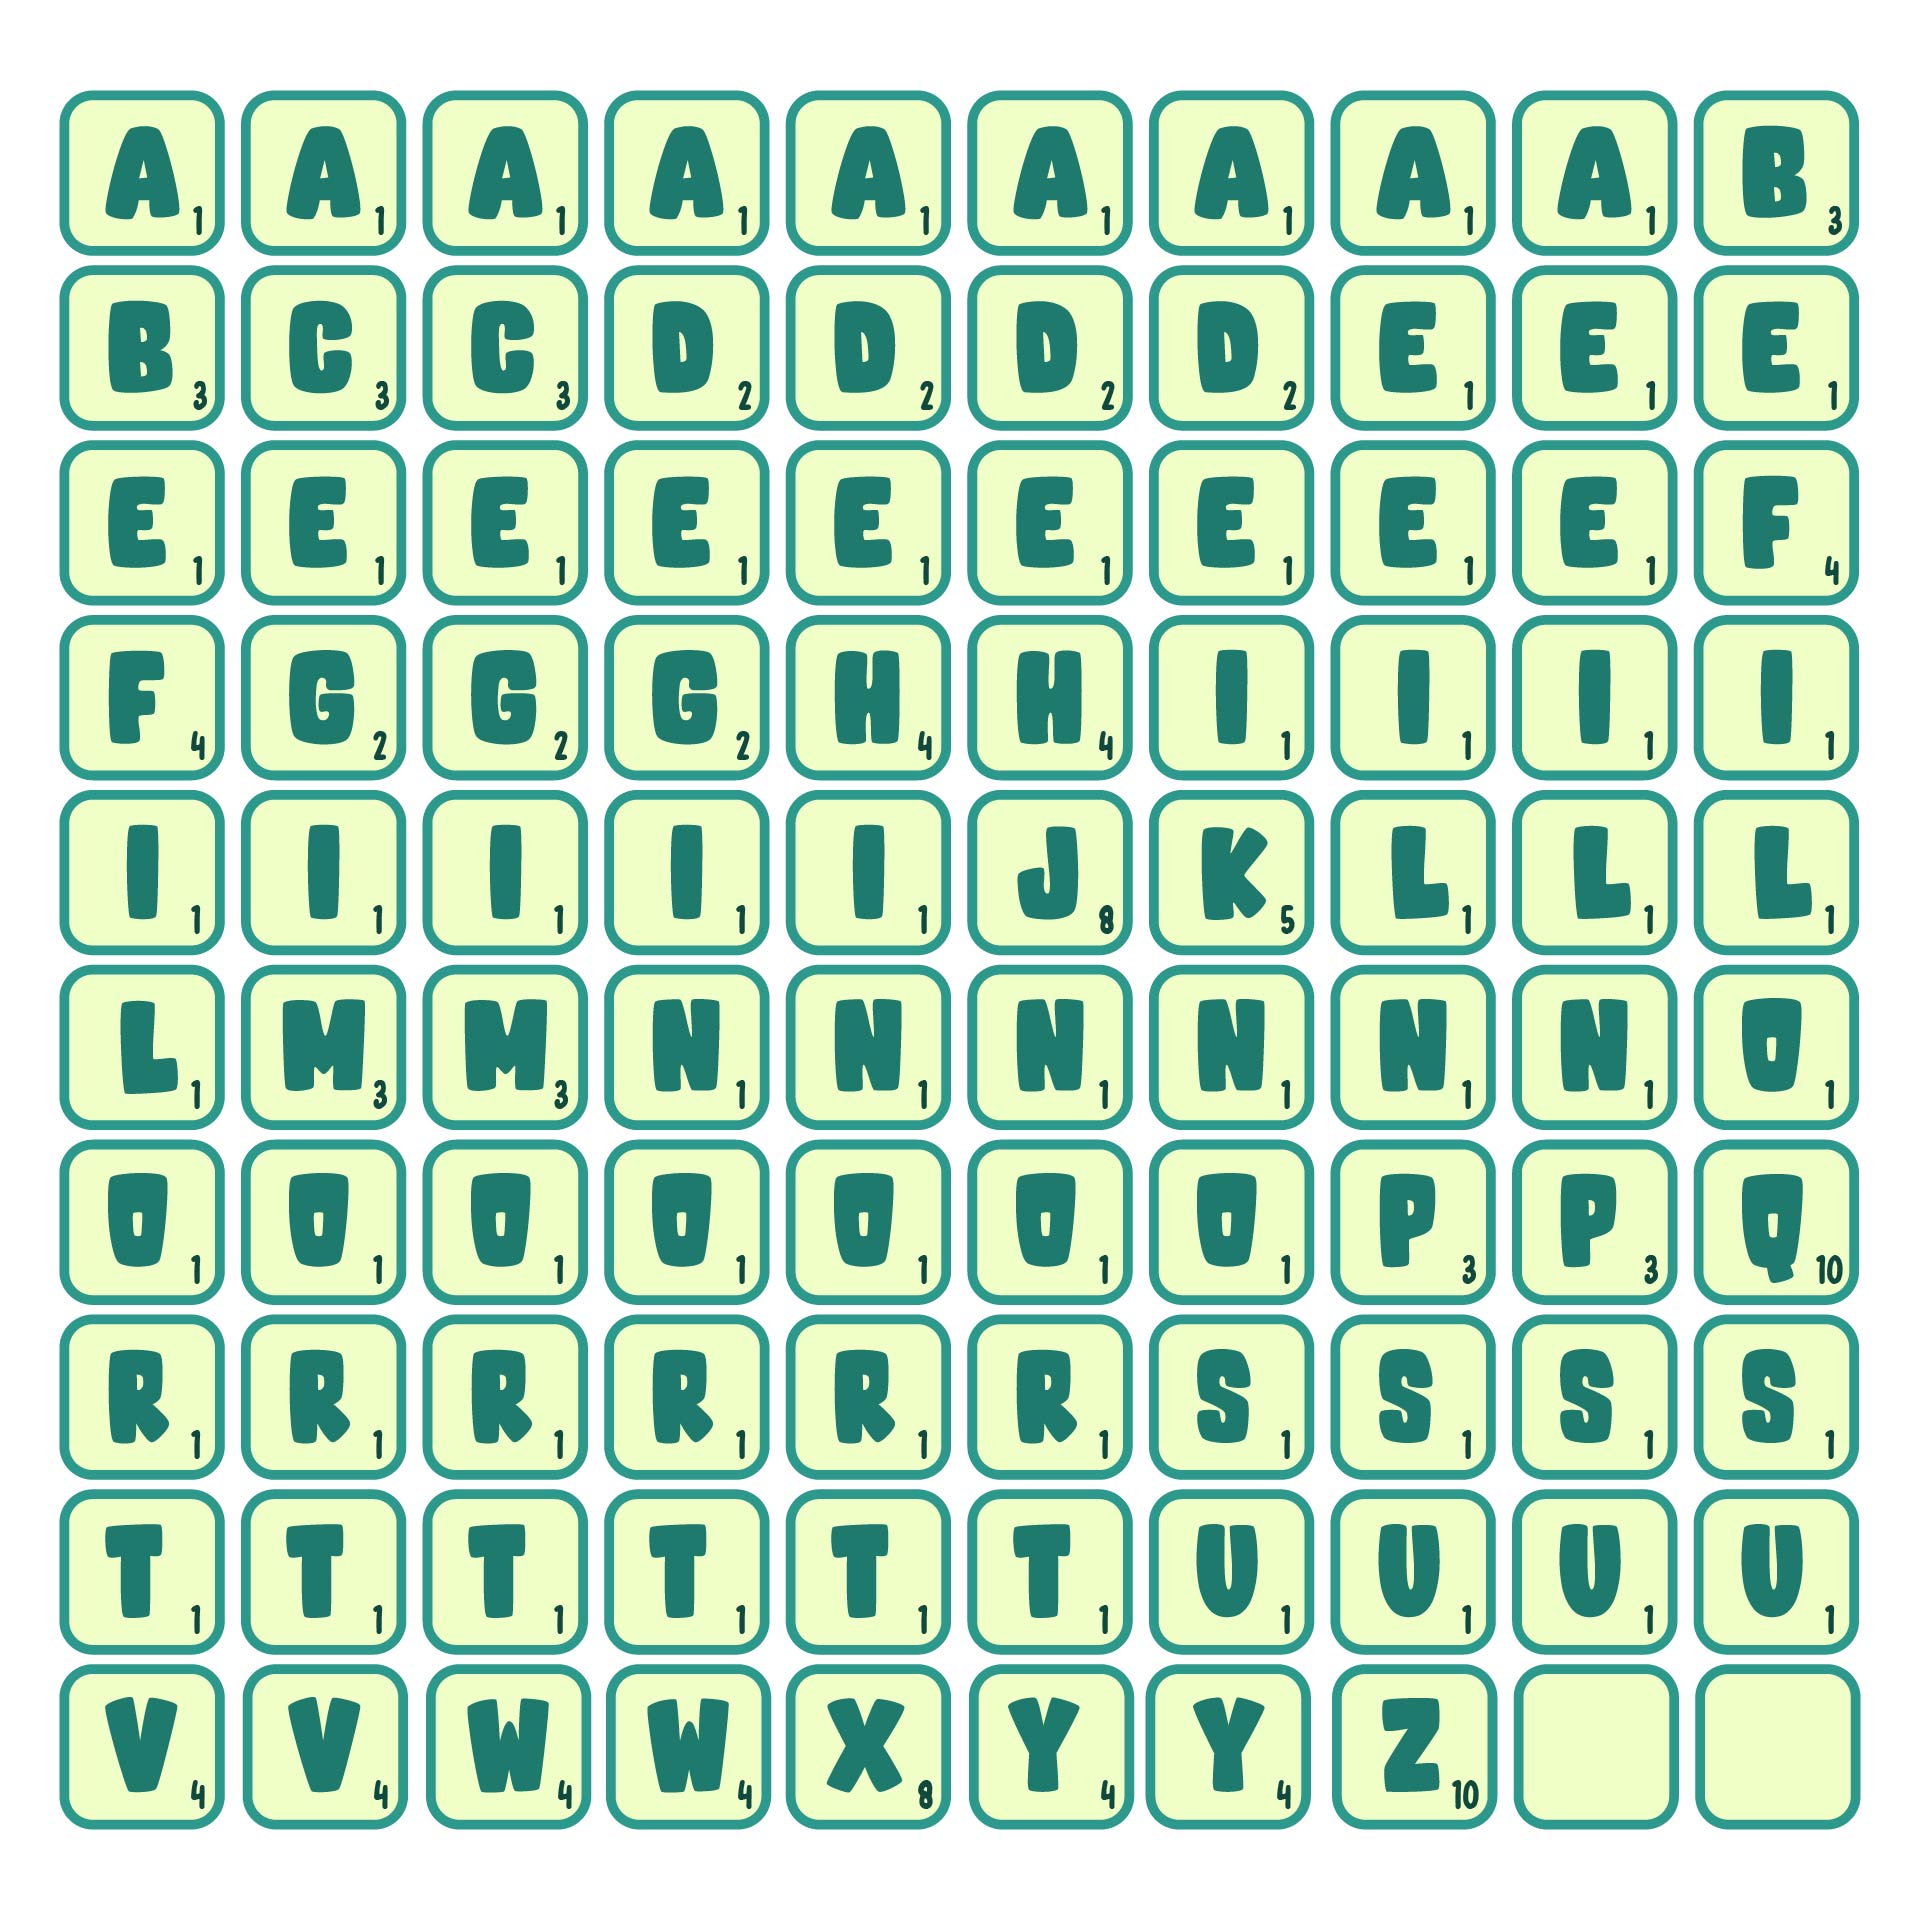 Printable Scrabble Letter Tiles